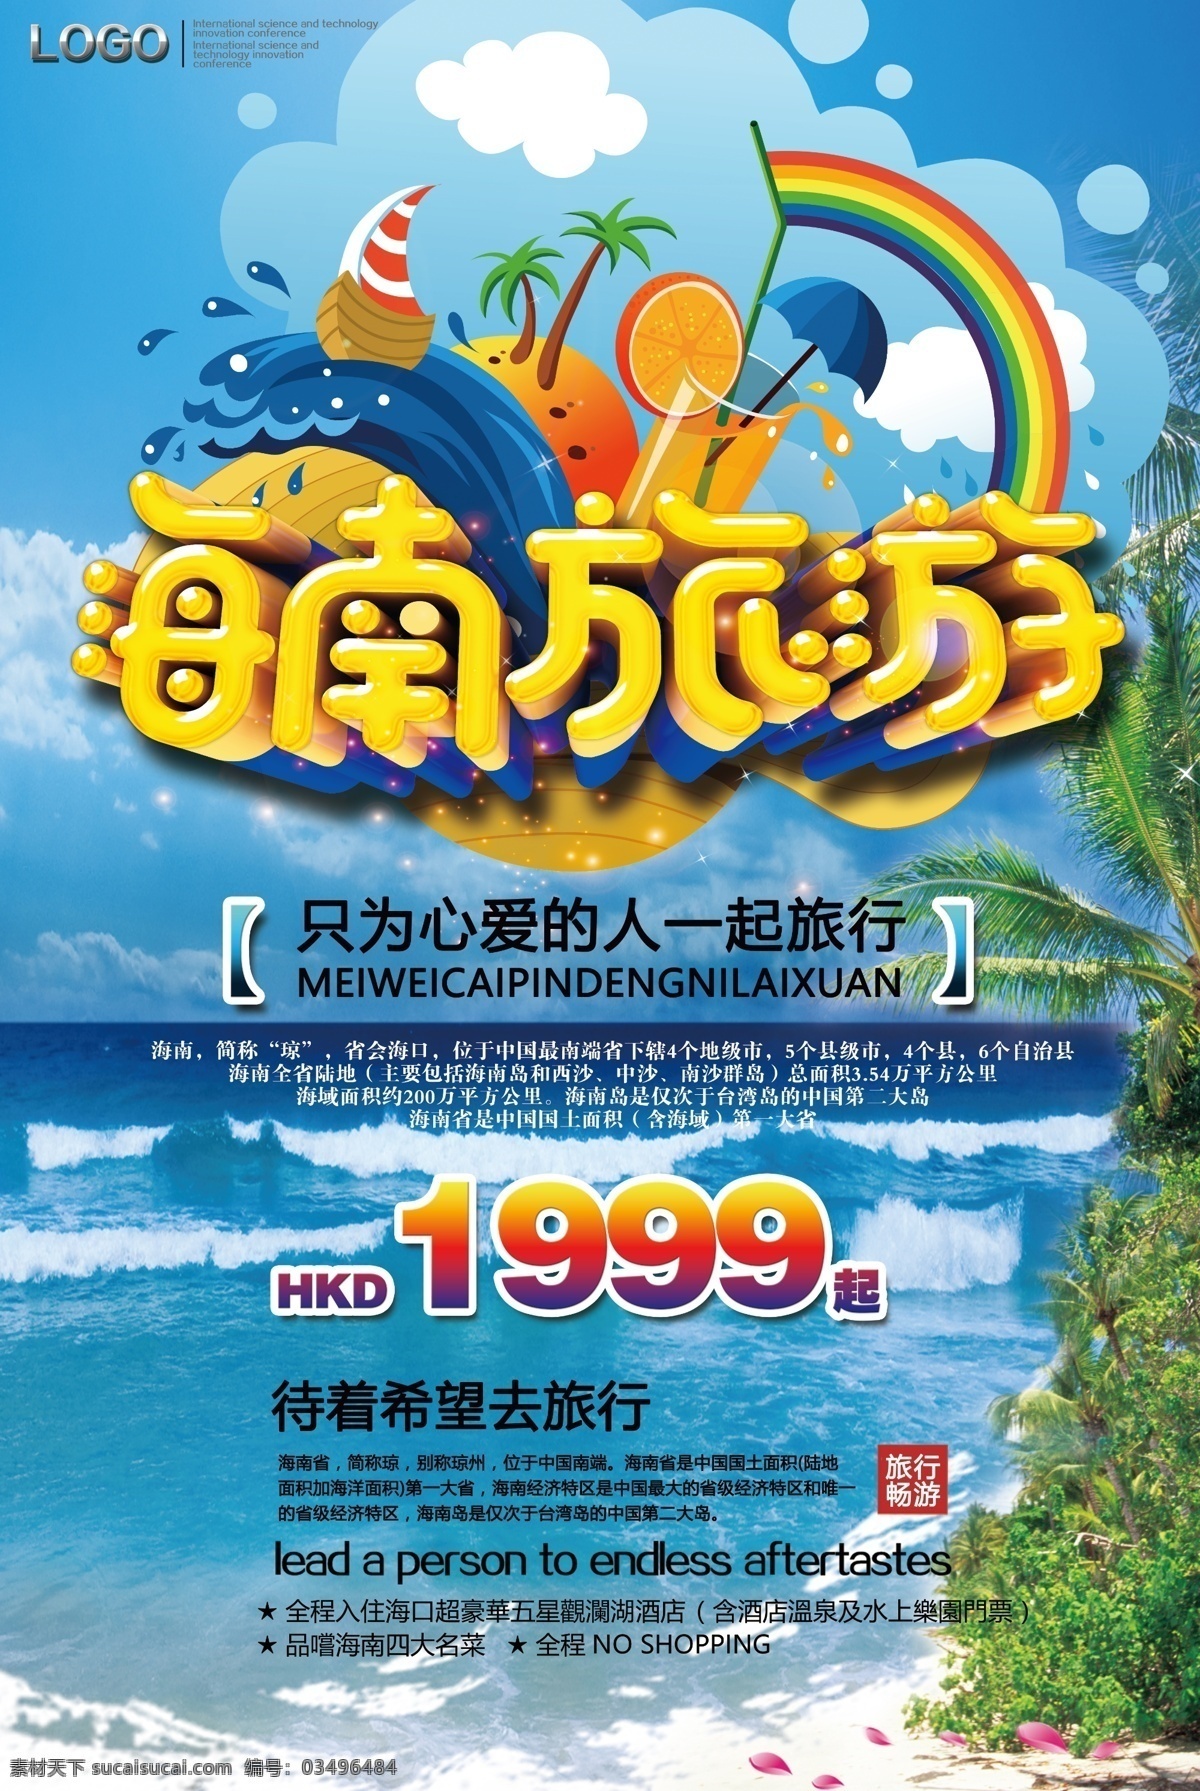 2018 彩色 海南旅游 促销 大气 旅游海报 设计大气 大气简约 大气设计